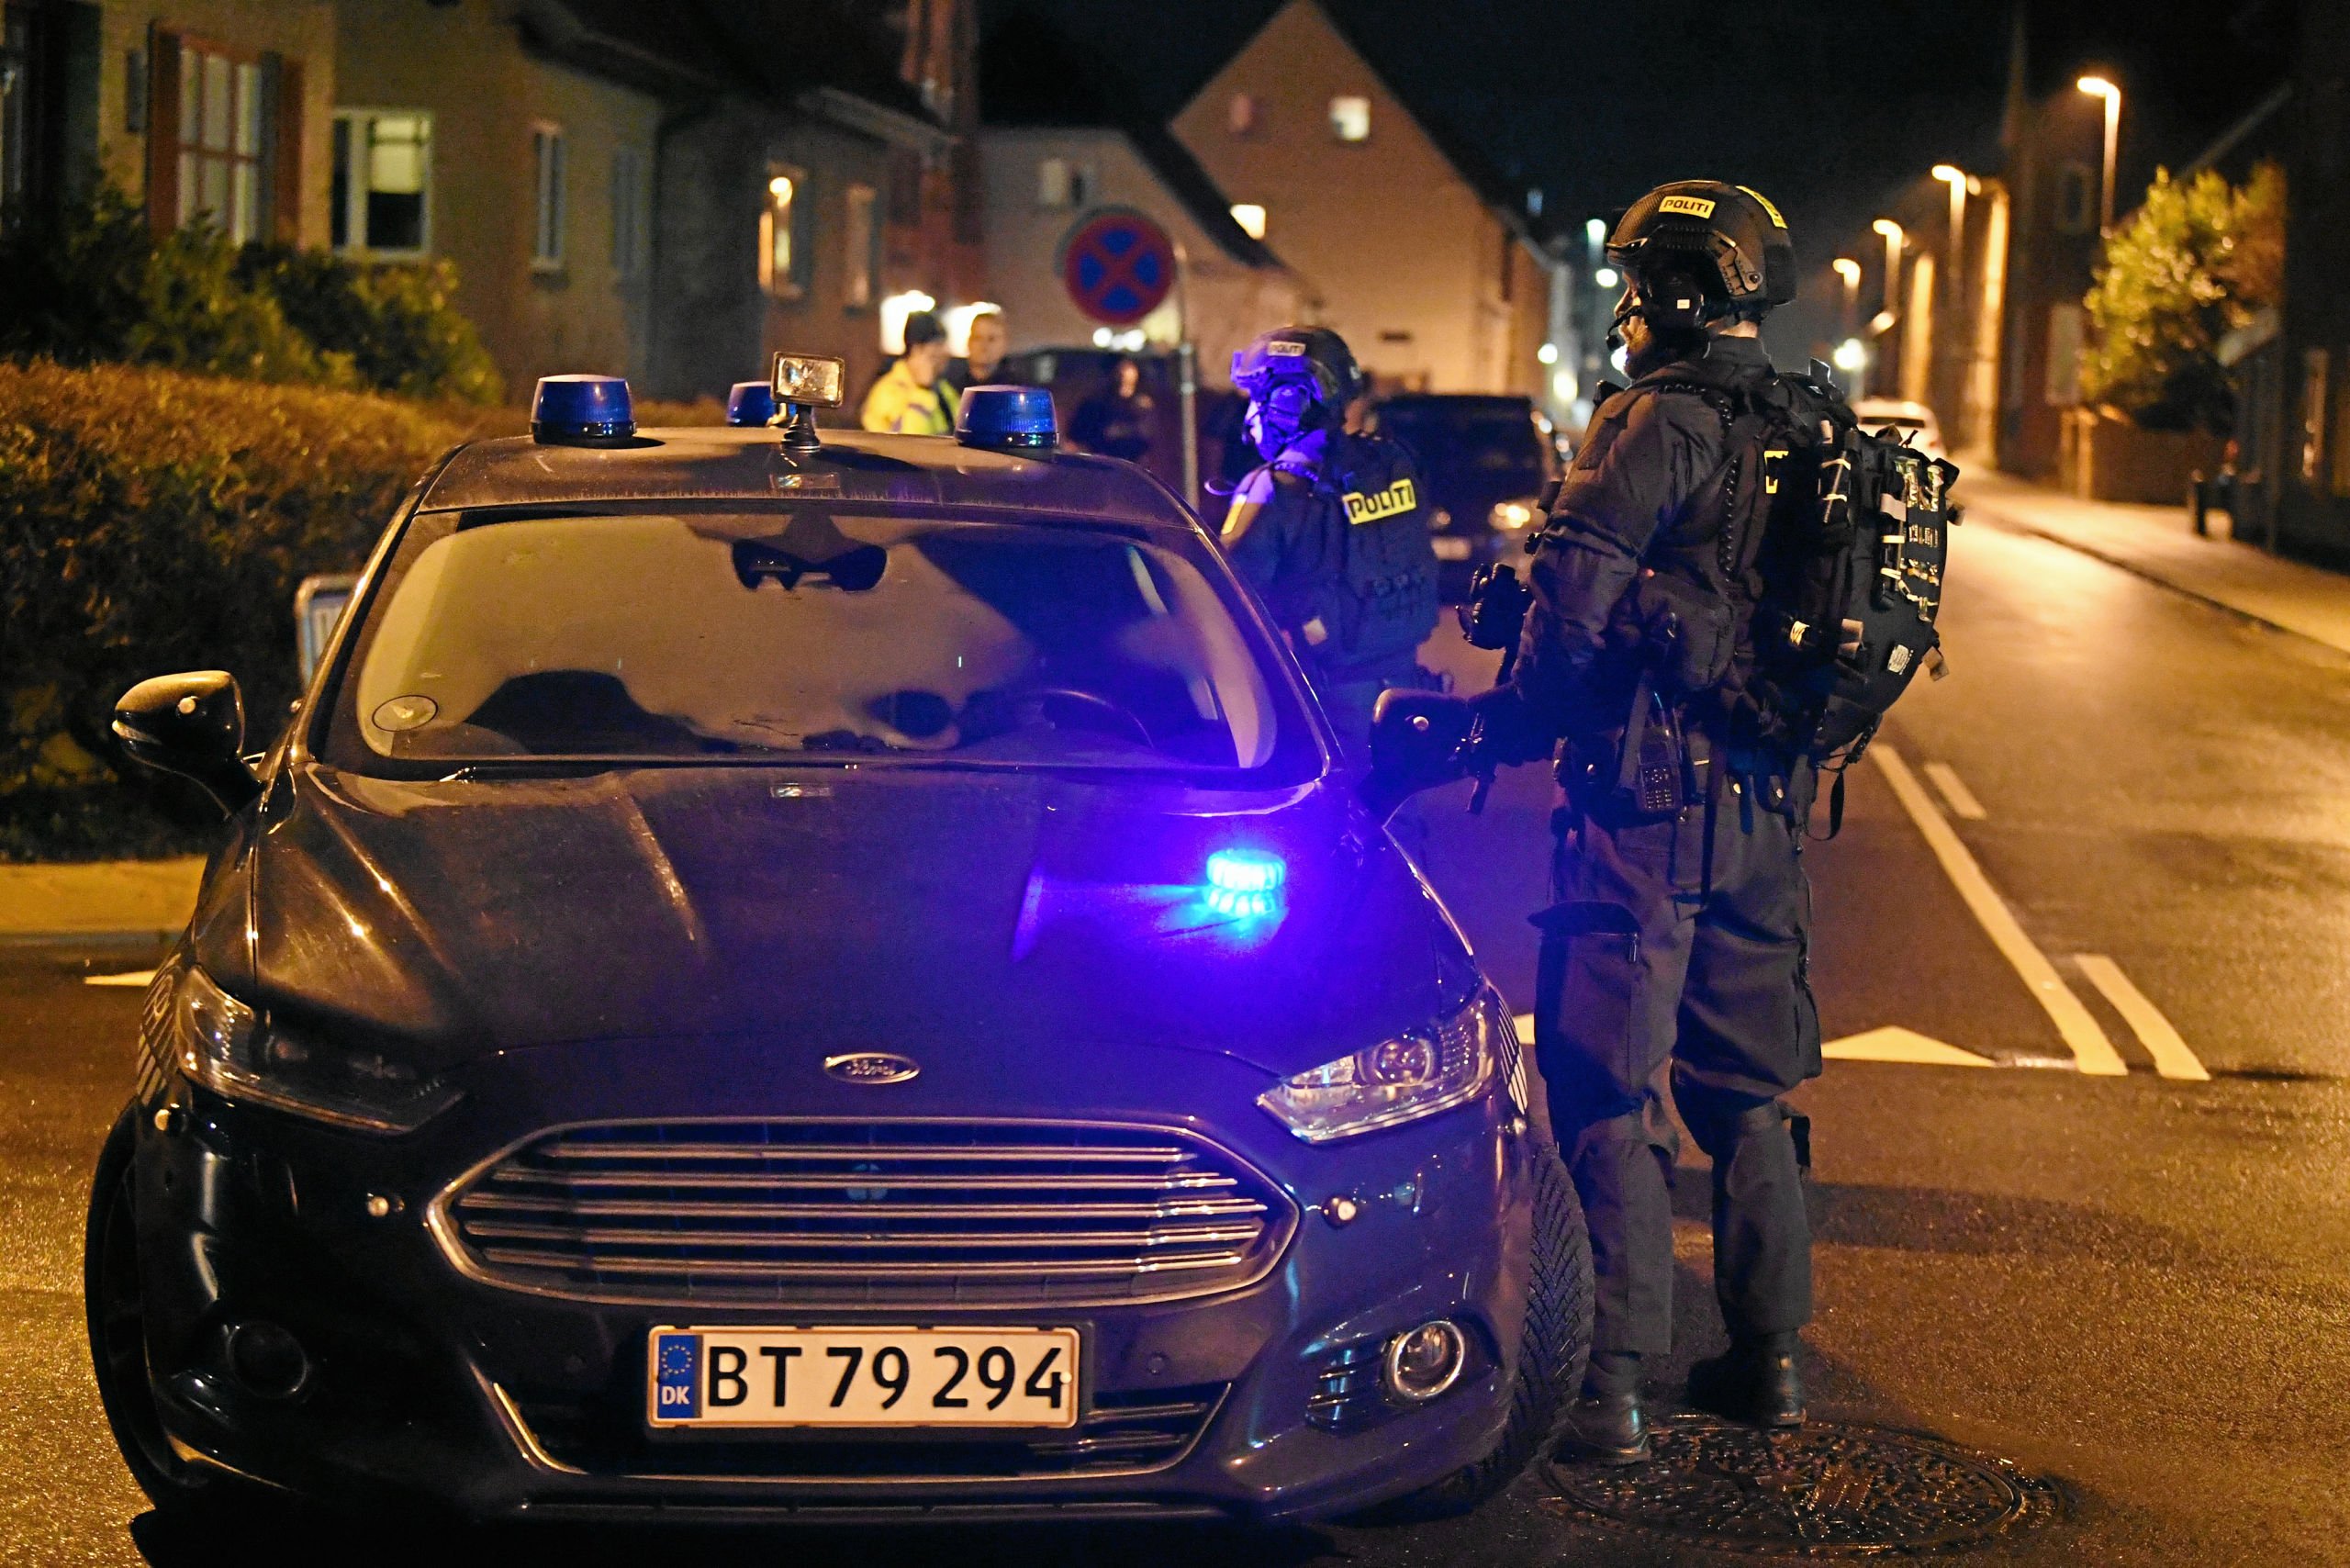 Kæmpe politiaktion i Fjerritslev: Mand skudt i hånden - politiet stormede hus